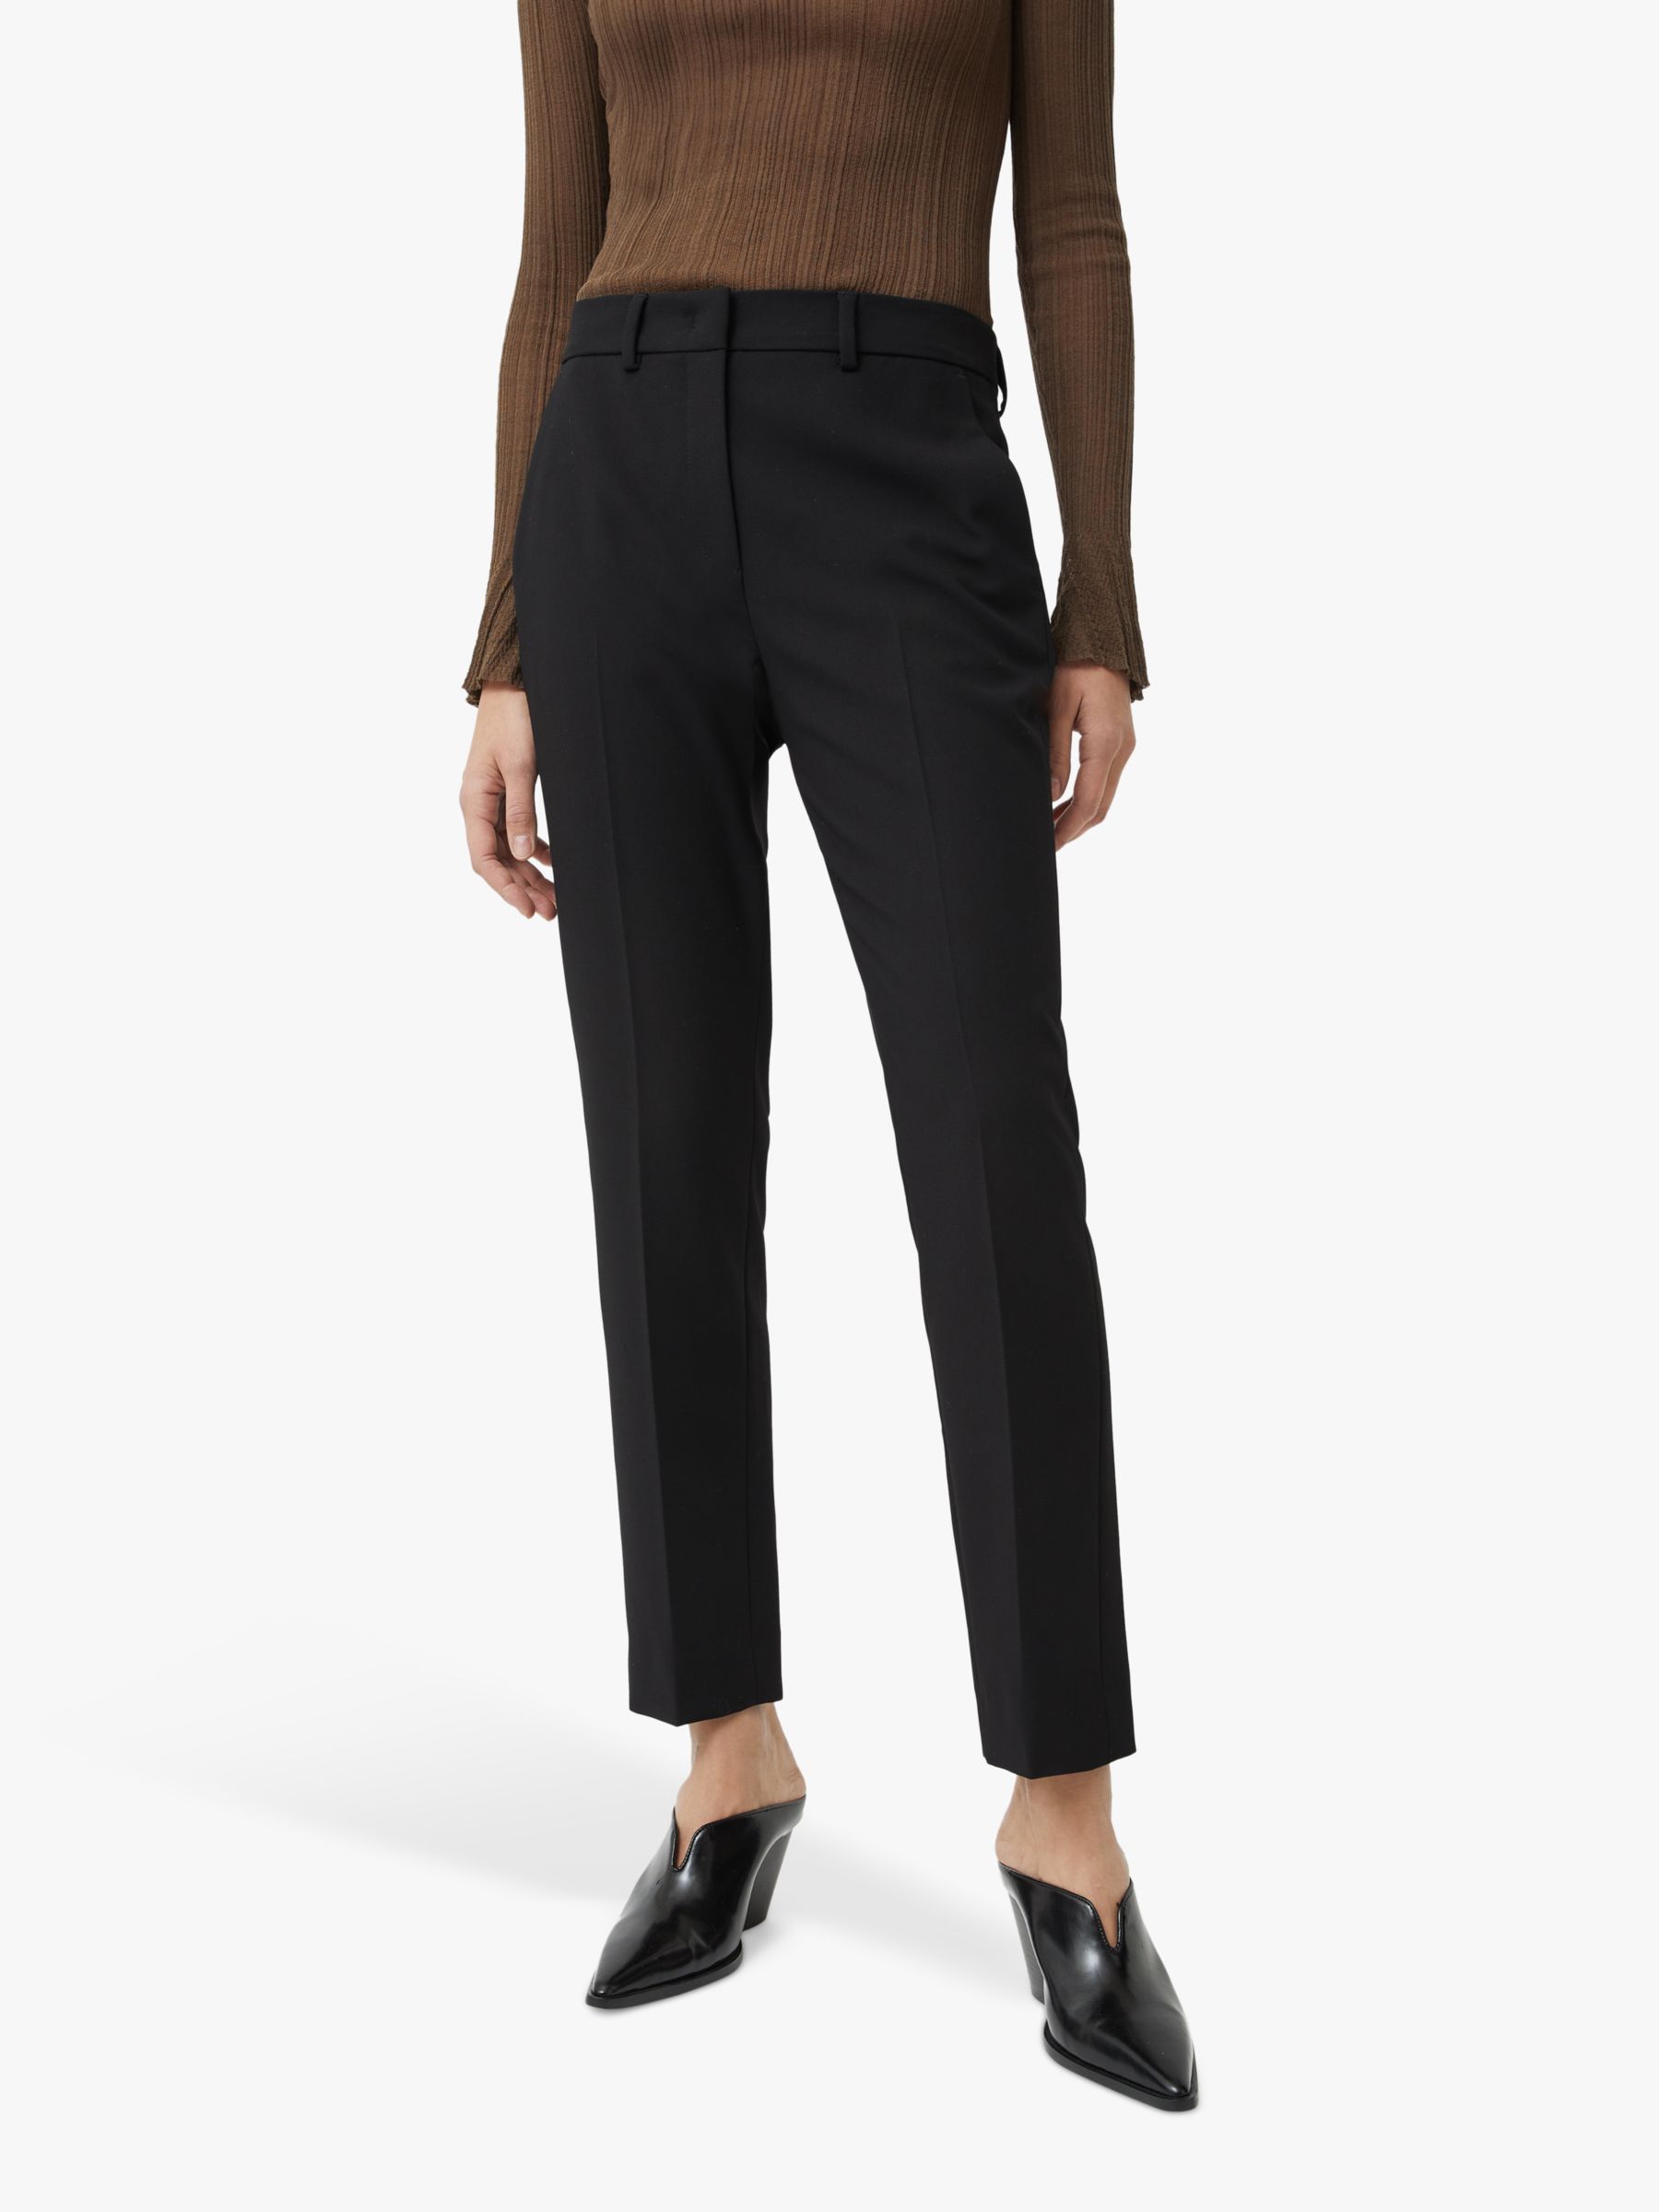 Jigsaw Modern Crepe Marden Trouser, Black, 6